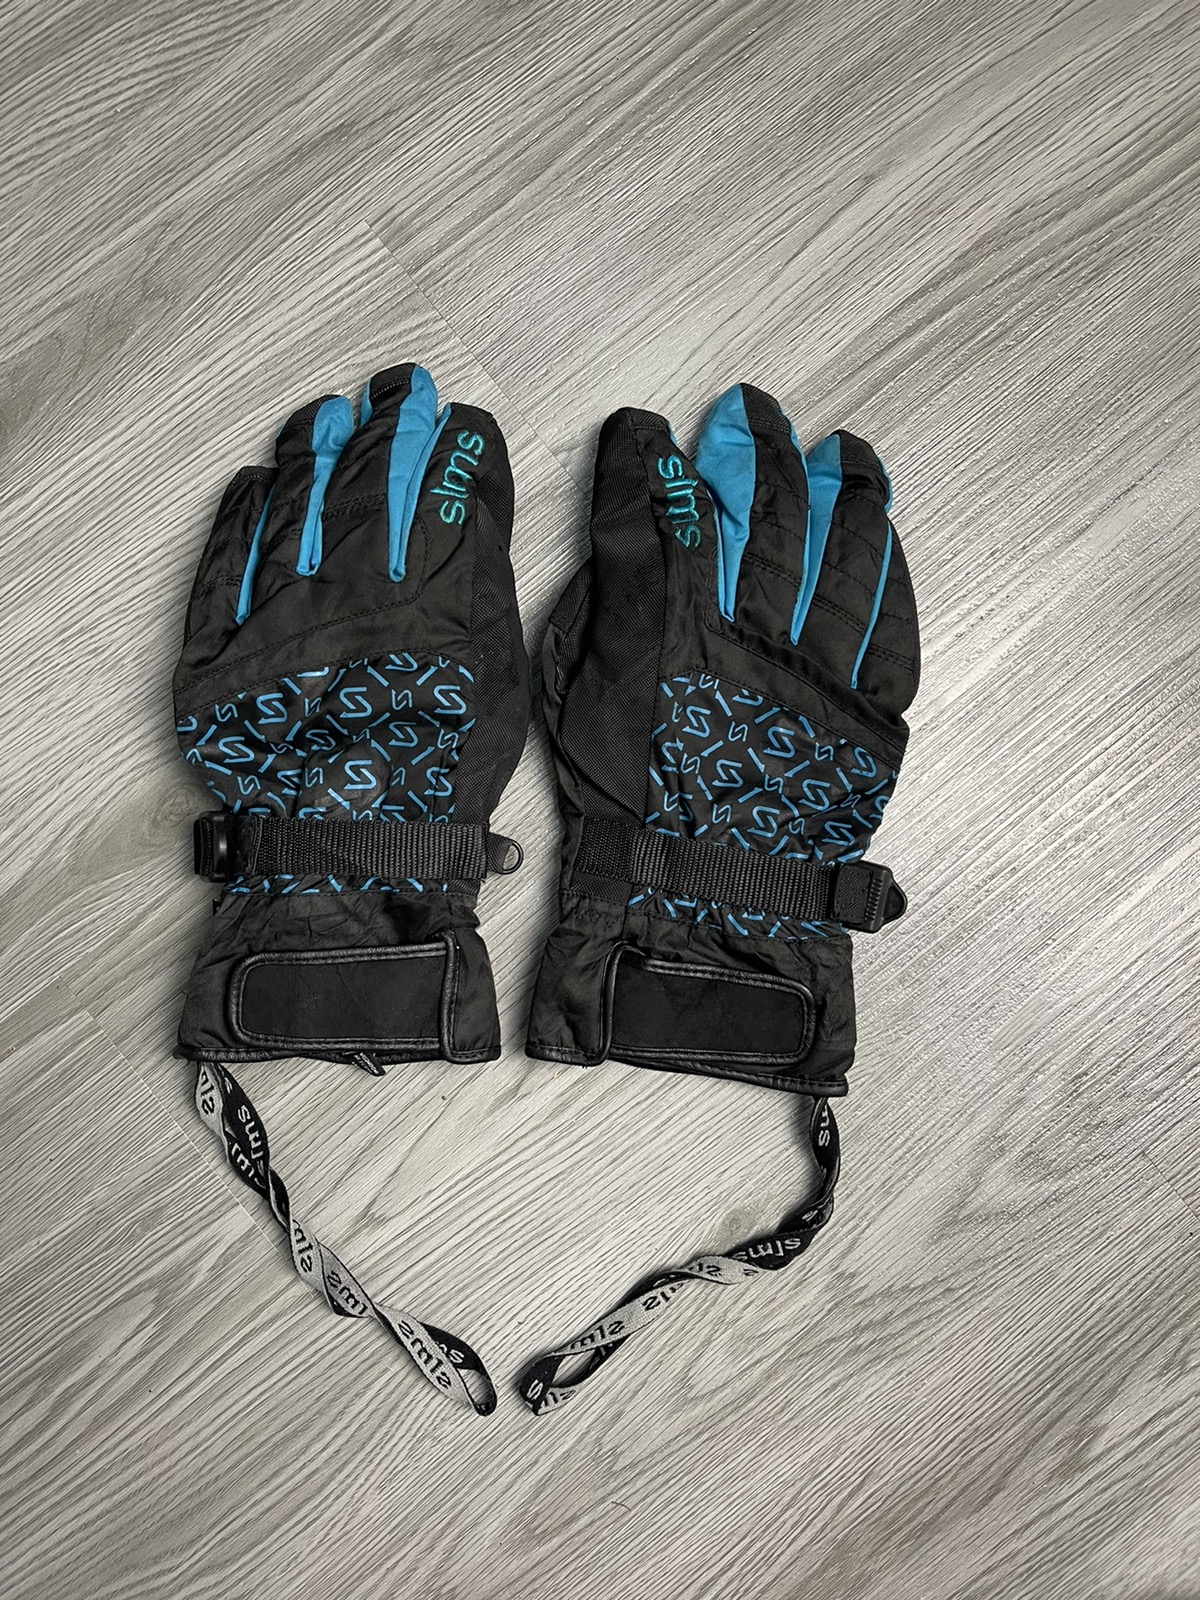 Goretex - Sims GoreTex Snow Glove medium size - 1